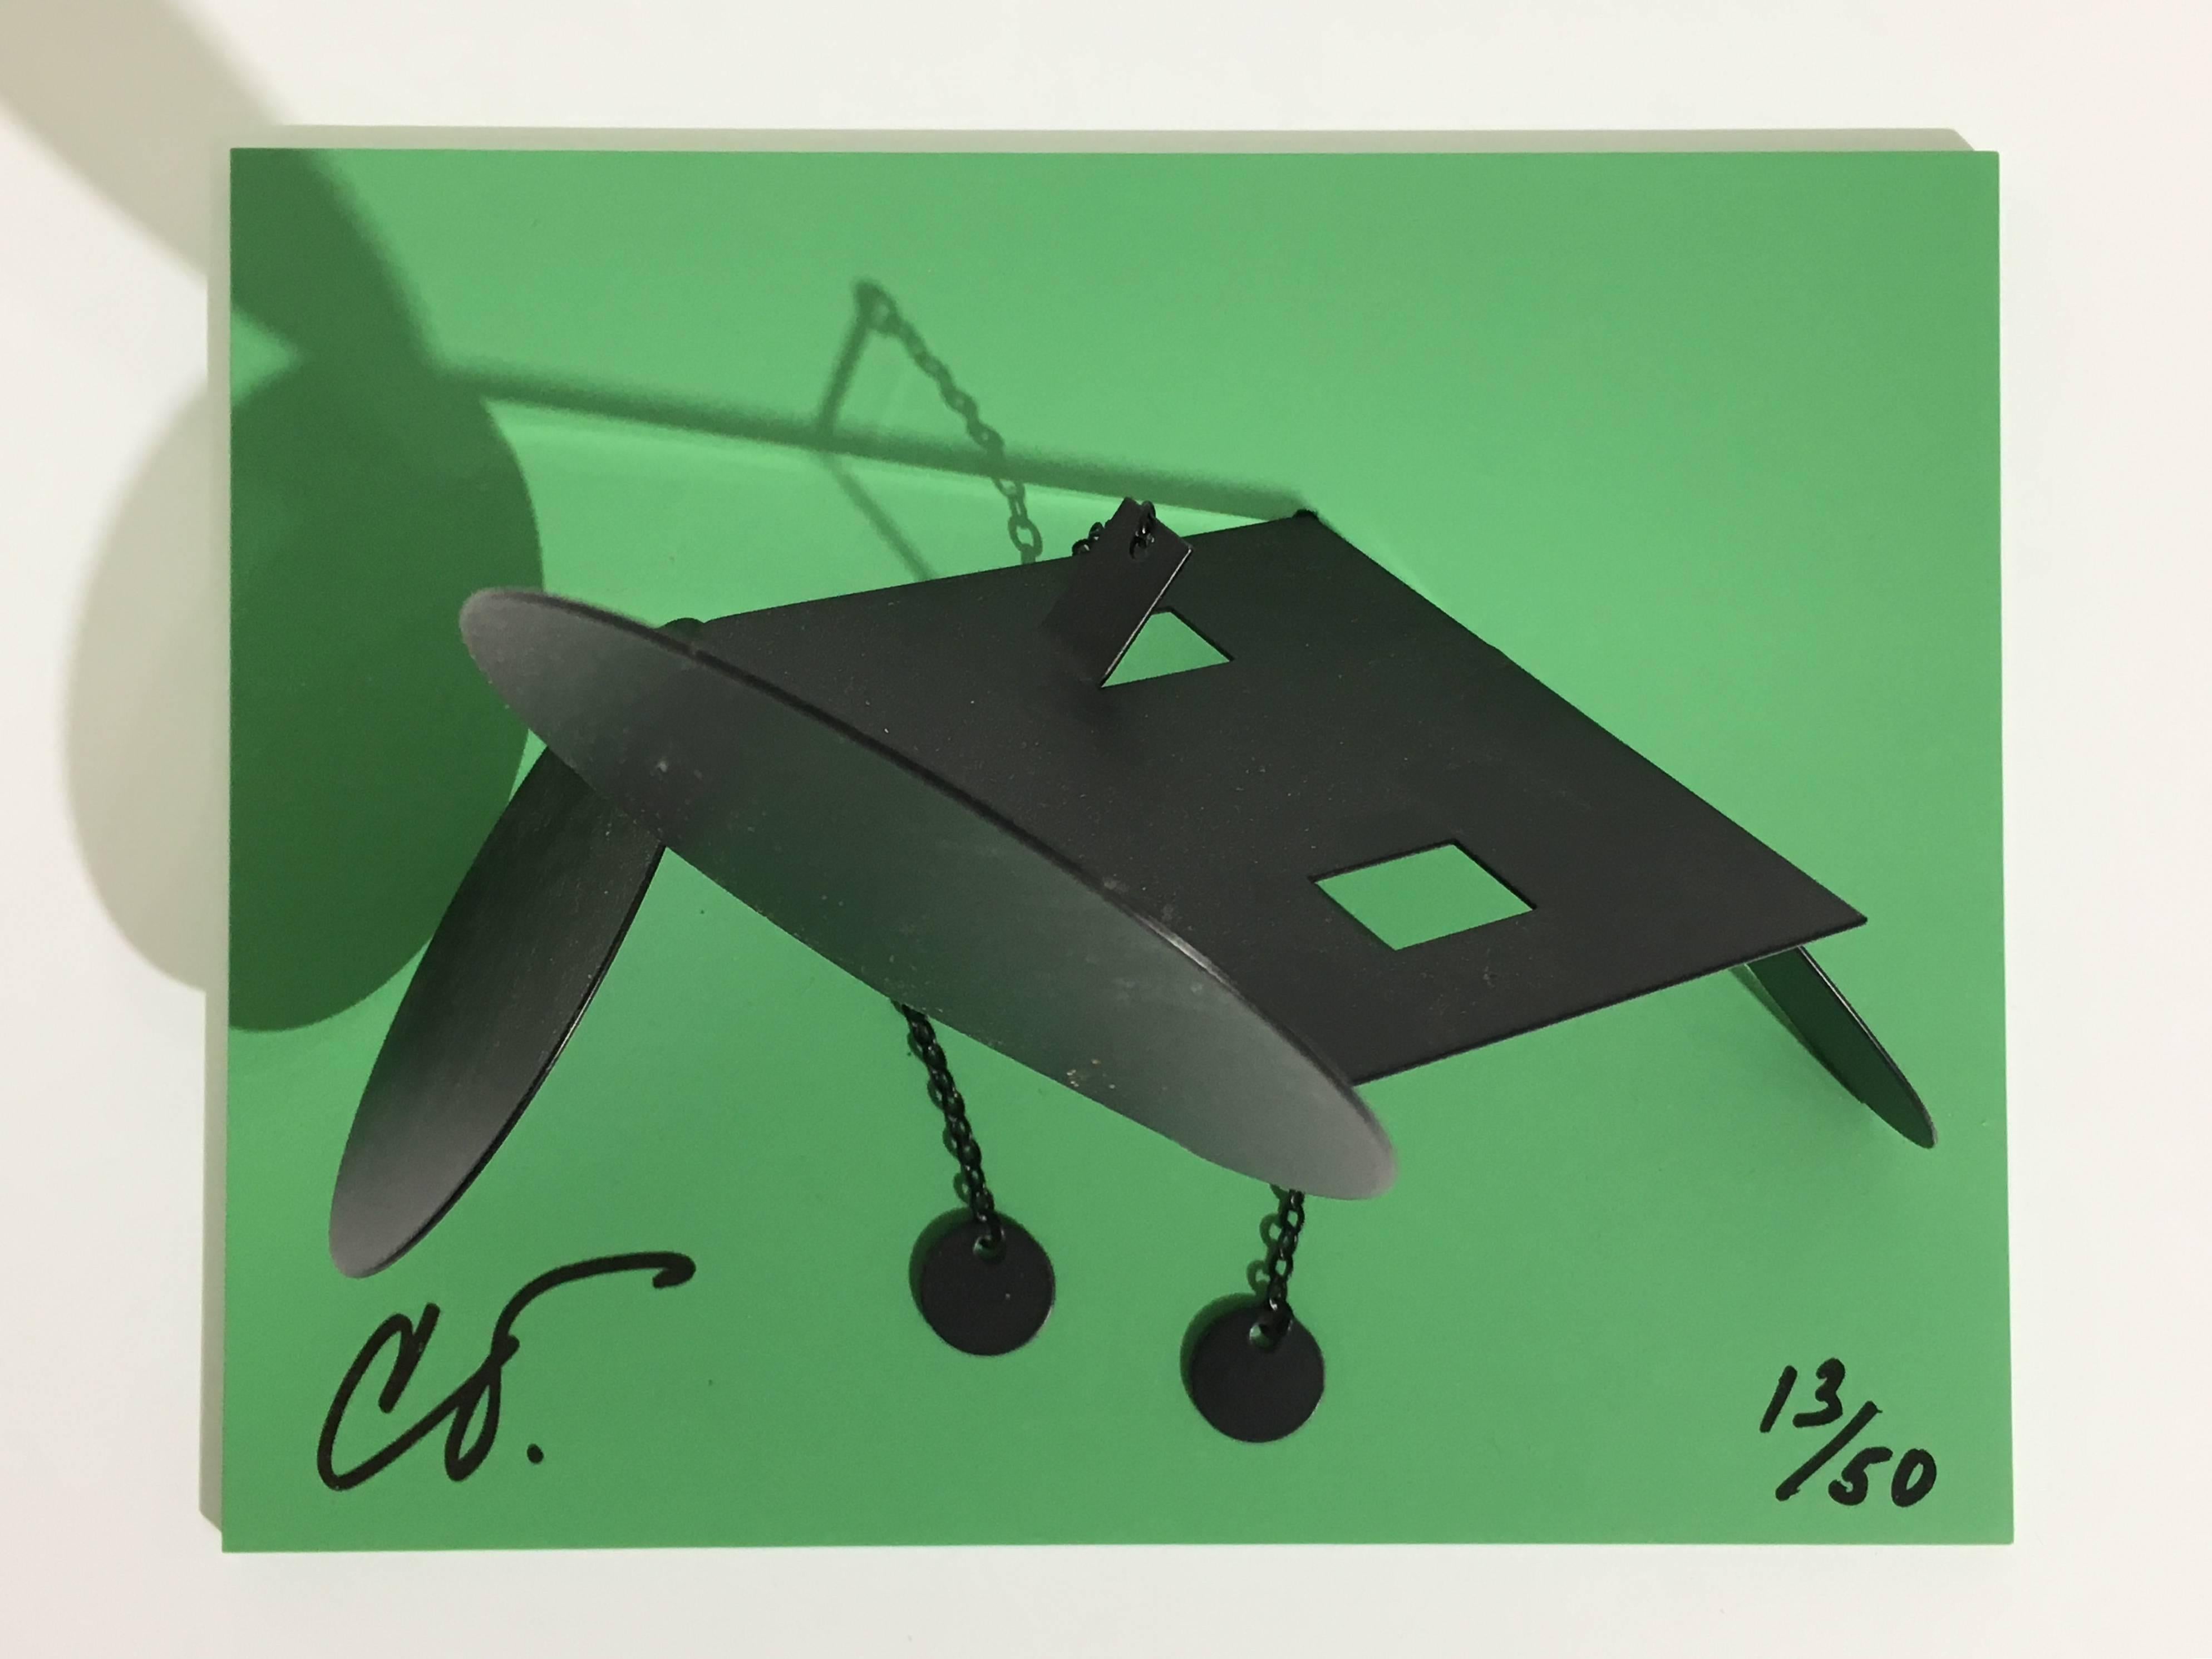 INFORMATIONS TECHNIQUES :

Claes Oldenburg
Balance souris géométrique E 'Desktop'
2013
Sculpture en aluminium peint sur base en aluminium peint
6 1/2 x 8 1/4 x 6 1/2 in.
Edition de 50
Signé et numéroté à l'encre sur la base

Accompagné d'un COA de